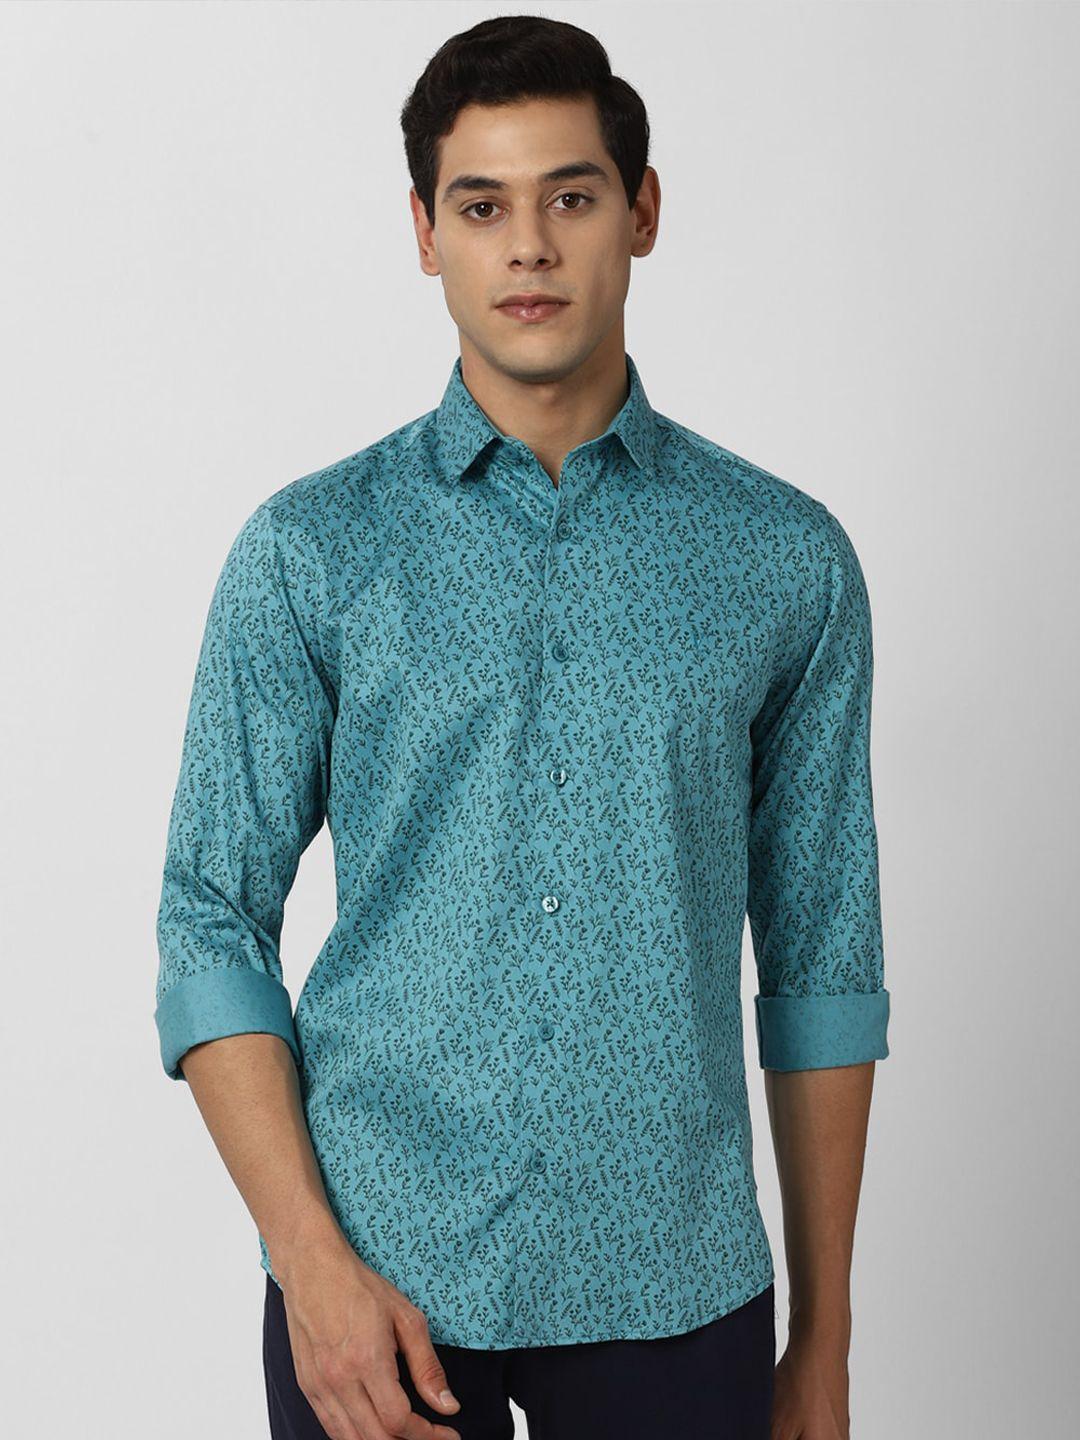 v dot men teal blue slim fit floral printed casual shirt